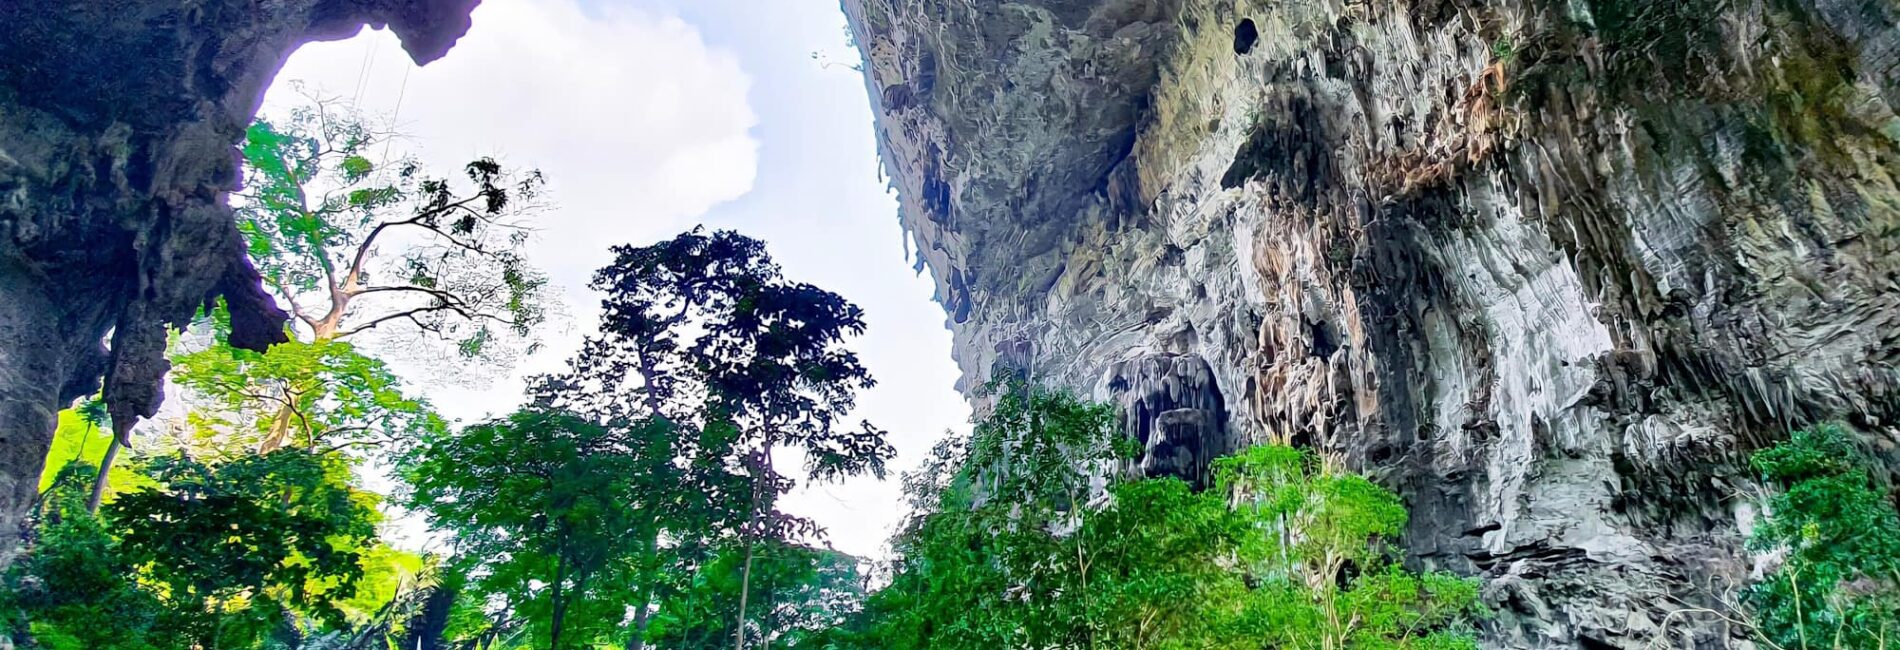 ถ้ำธารลอดน้อย – ถ้ำธารลอดใหญ่ จ.กาญจนบุรี อุทยานแห่งชาต